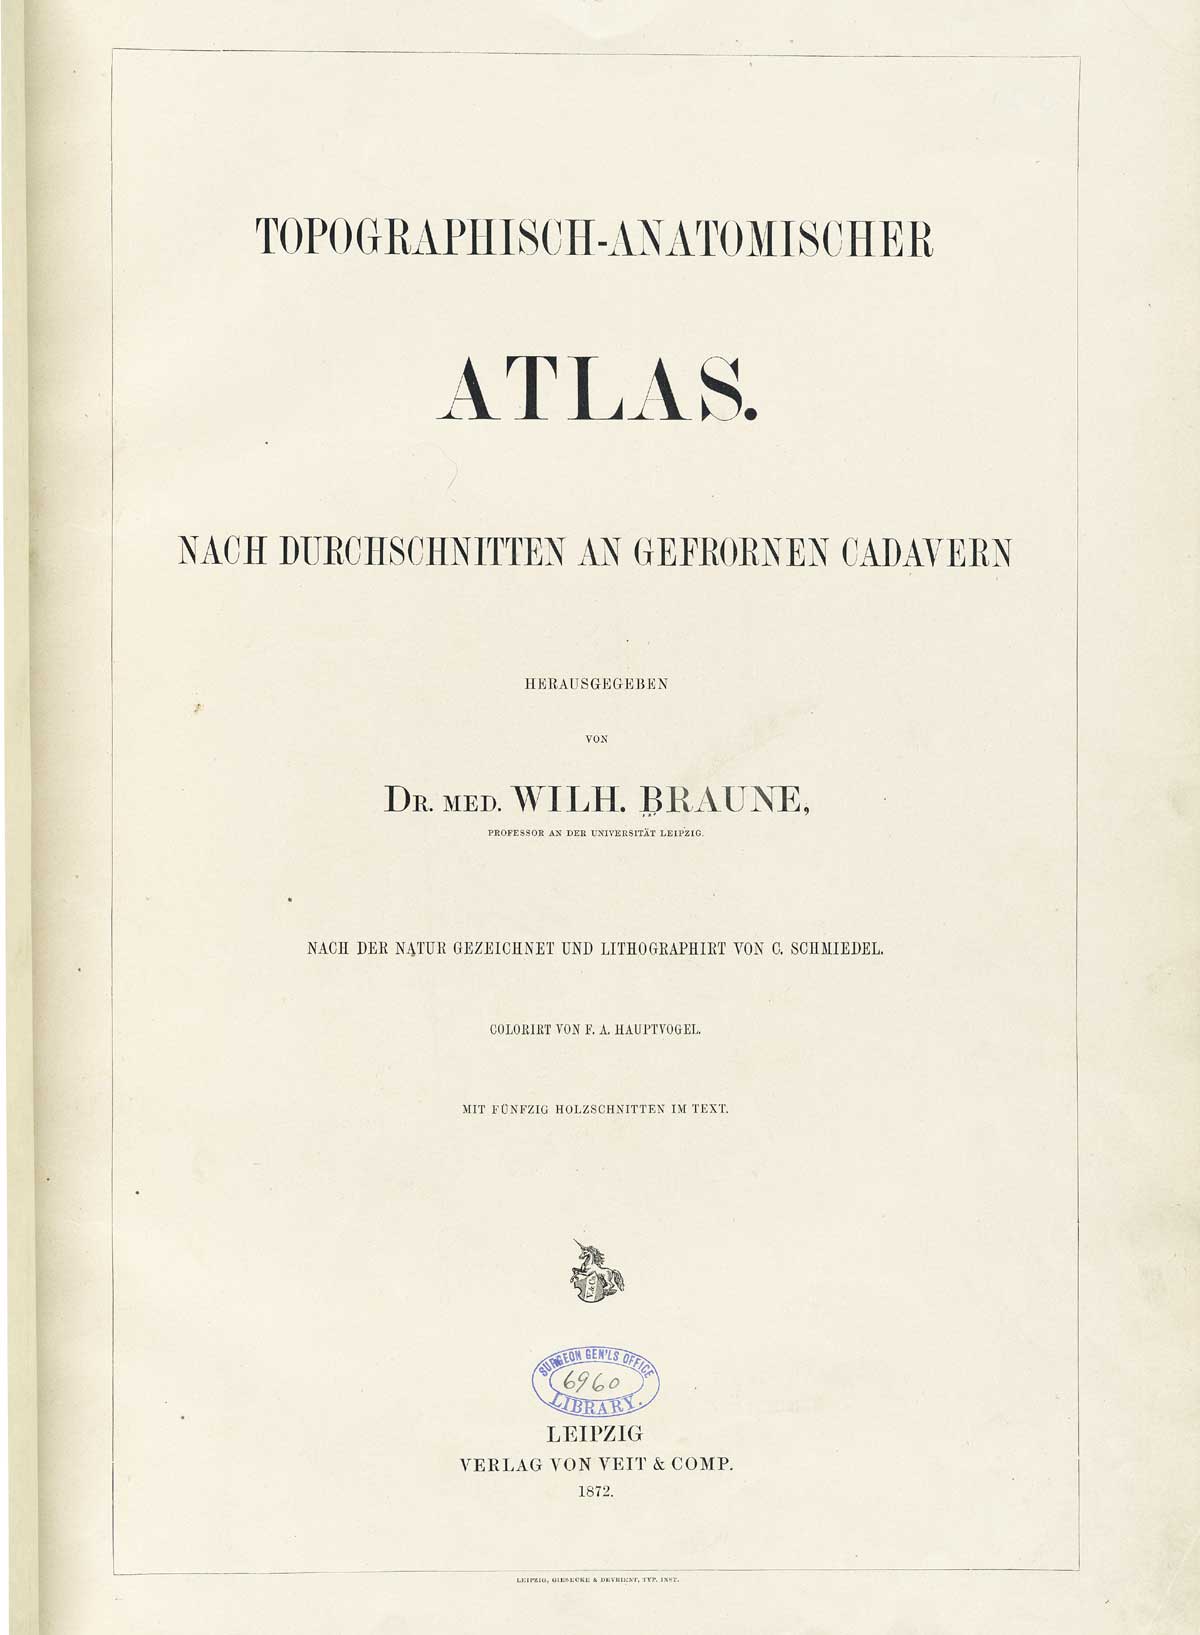 Title page in German of Wilhelm Braune’s Topographisch-anatomischer Atlas. Leipzig, 1867.